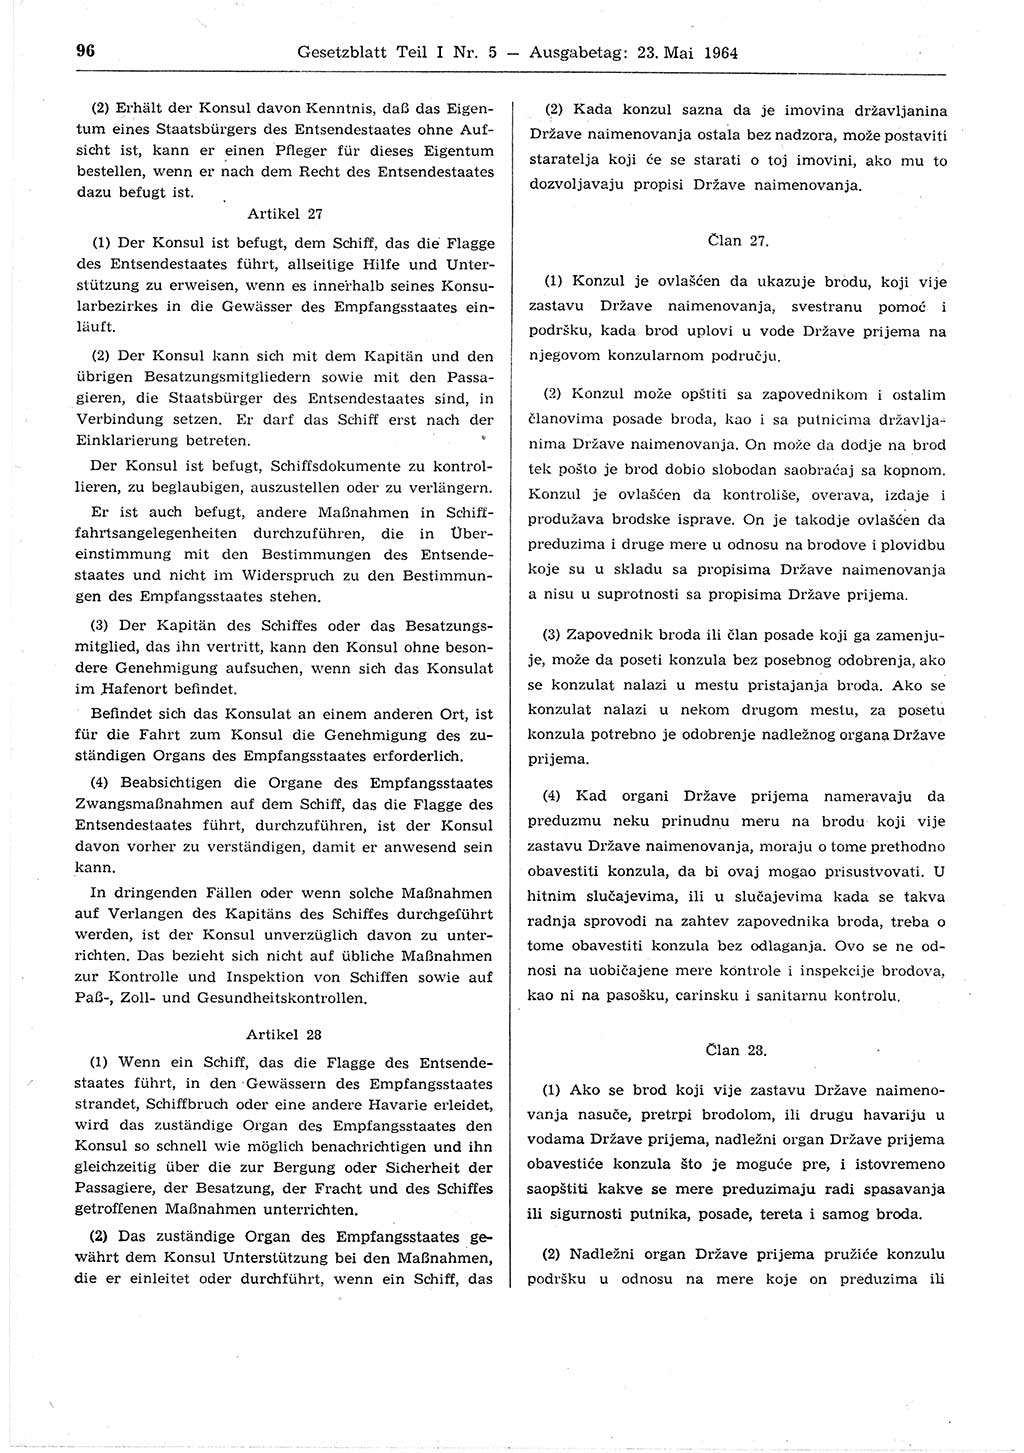 Gesetzblatt (GBl.) der Deutschen Demokratischen Republik (DDR) Teil Ⅰ 1964, Seite 96 (GBl. DDR Ⅰ 1964, S. 96)